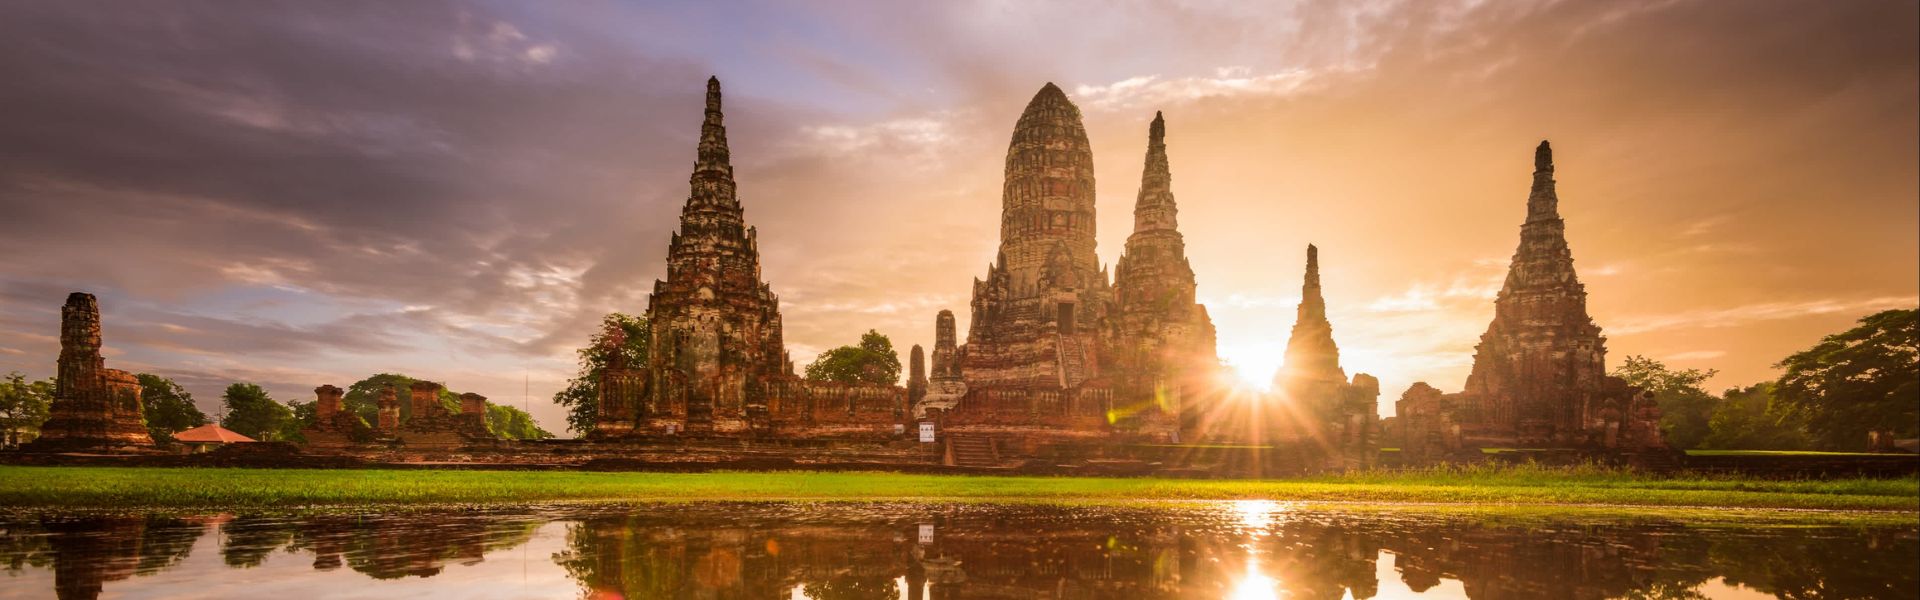 Ayutthaya Sehenswürdigkeiten und Aktivitäten | Thailand Reisen